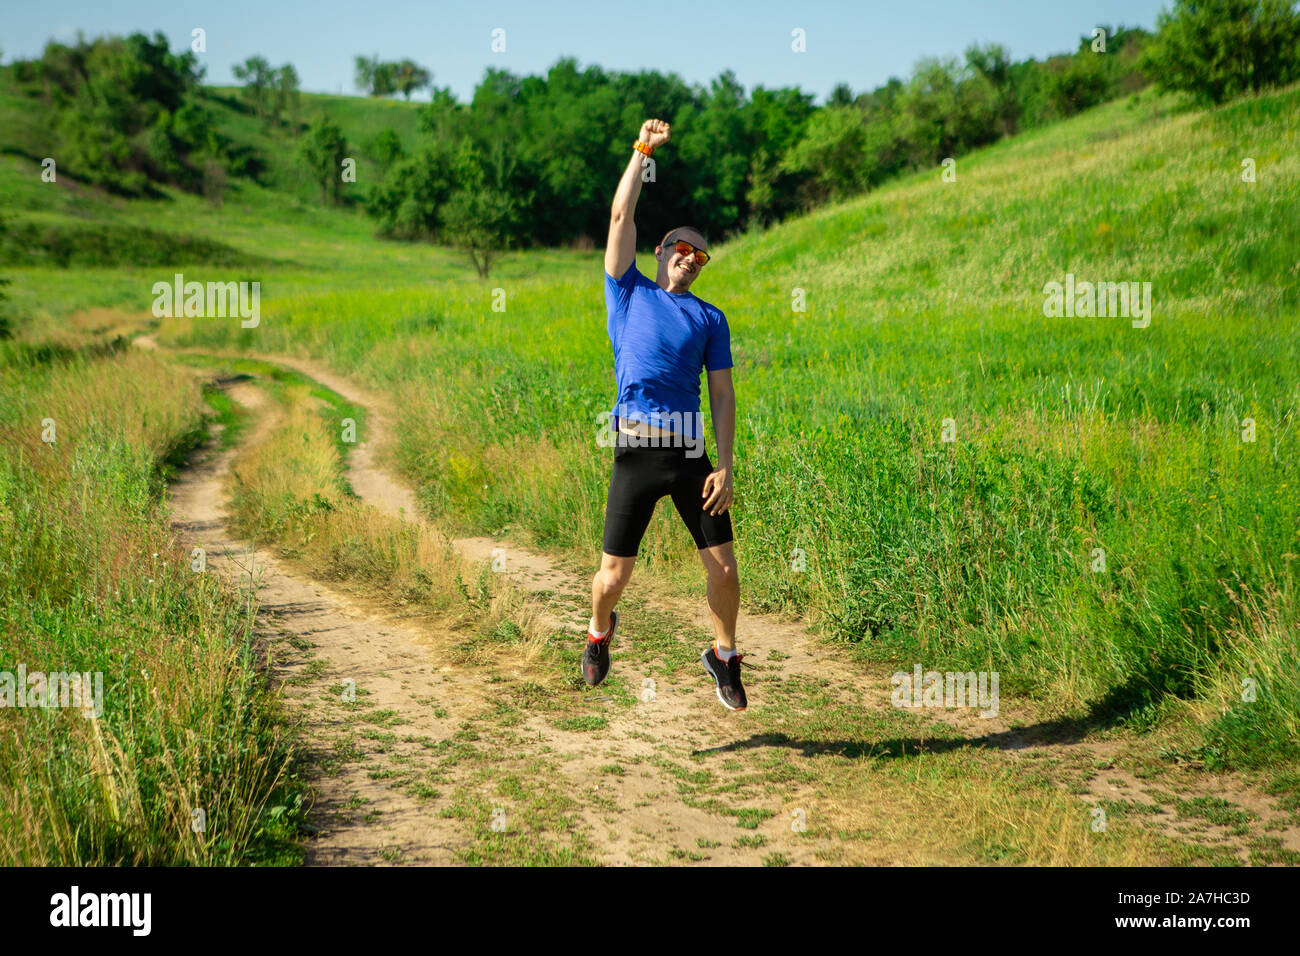 Homme runner de saut et de montrer comme il est vainqueur de la course Banque D'Images